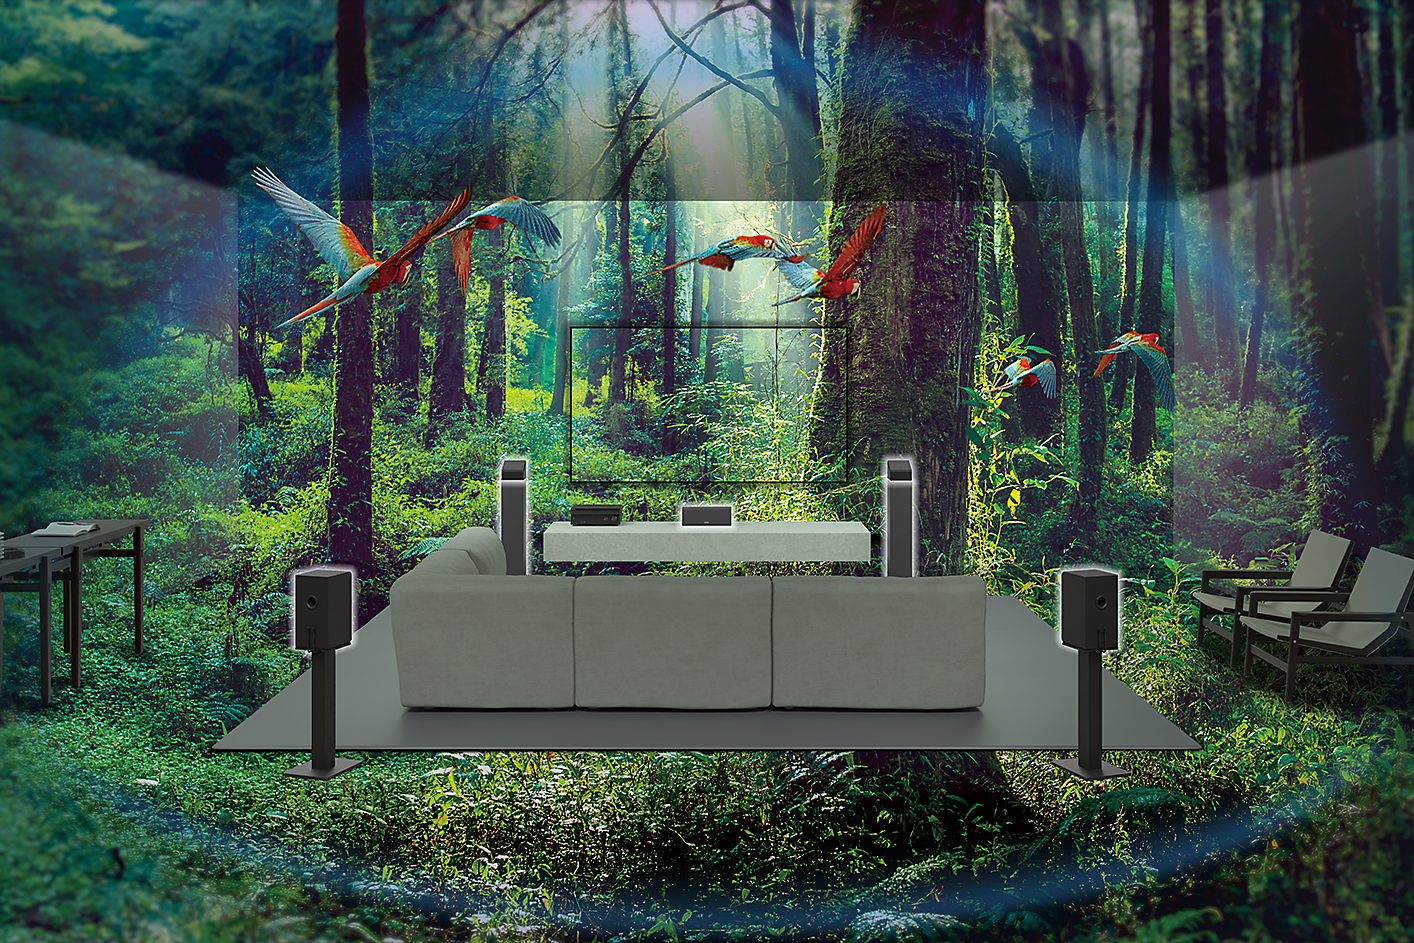 Slika kauča, TV uređaja i zvučnika usred šume sa papagajima koji lete naokolo